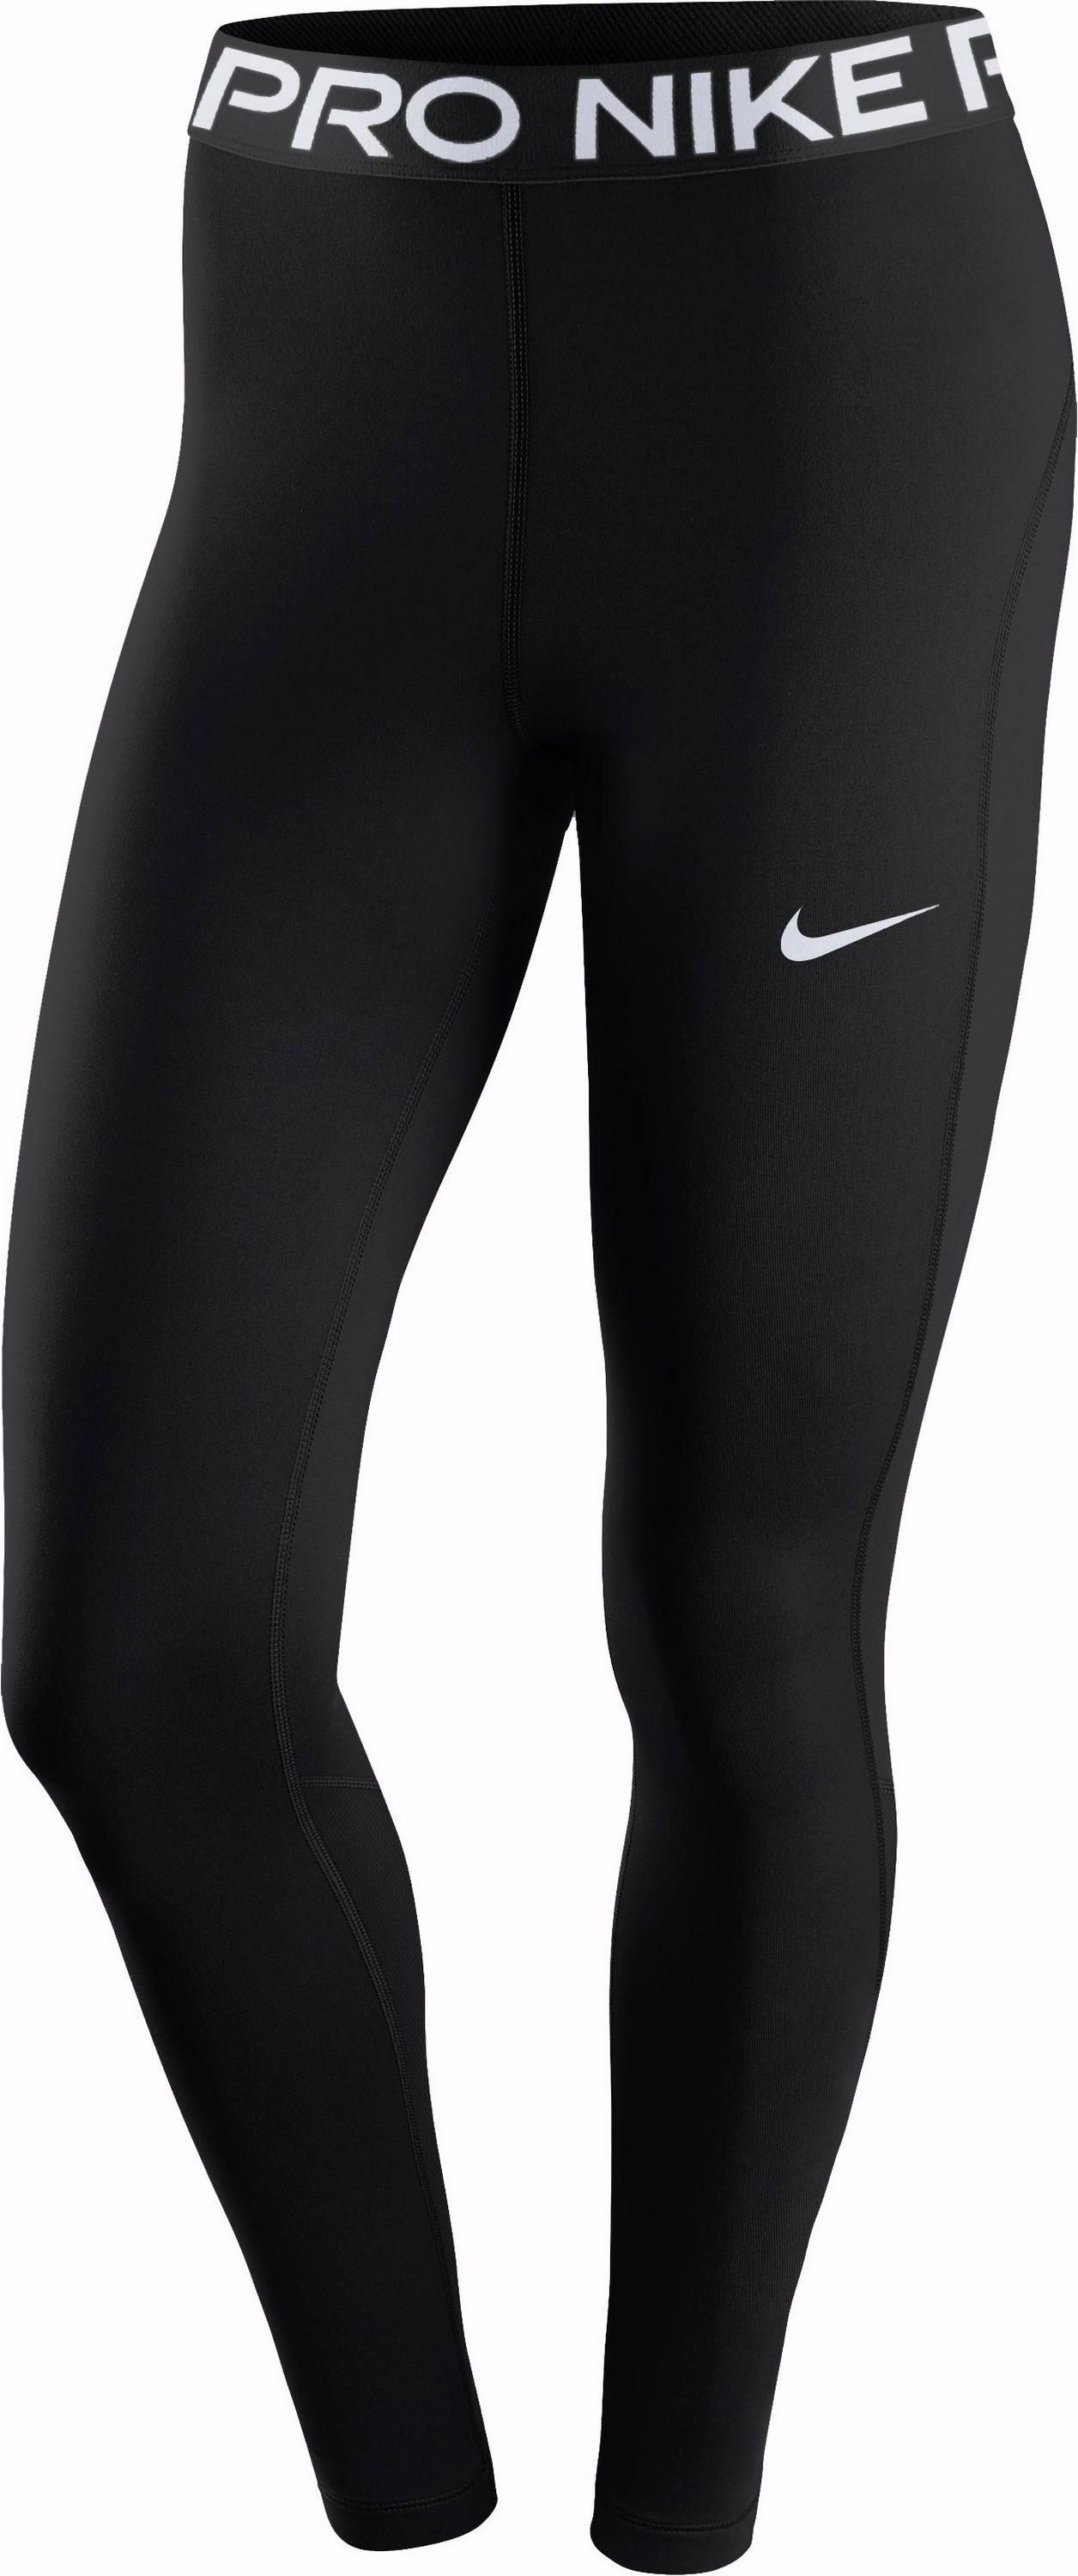 Nike PRO 365 Tights Damen in black-white, Größe XL - schwarz